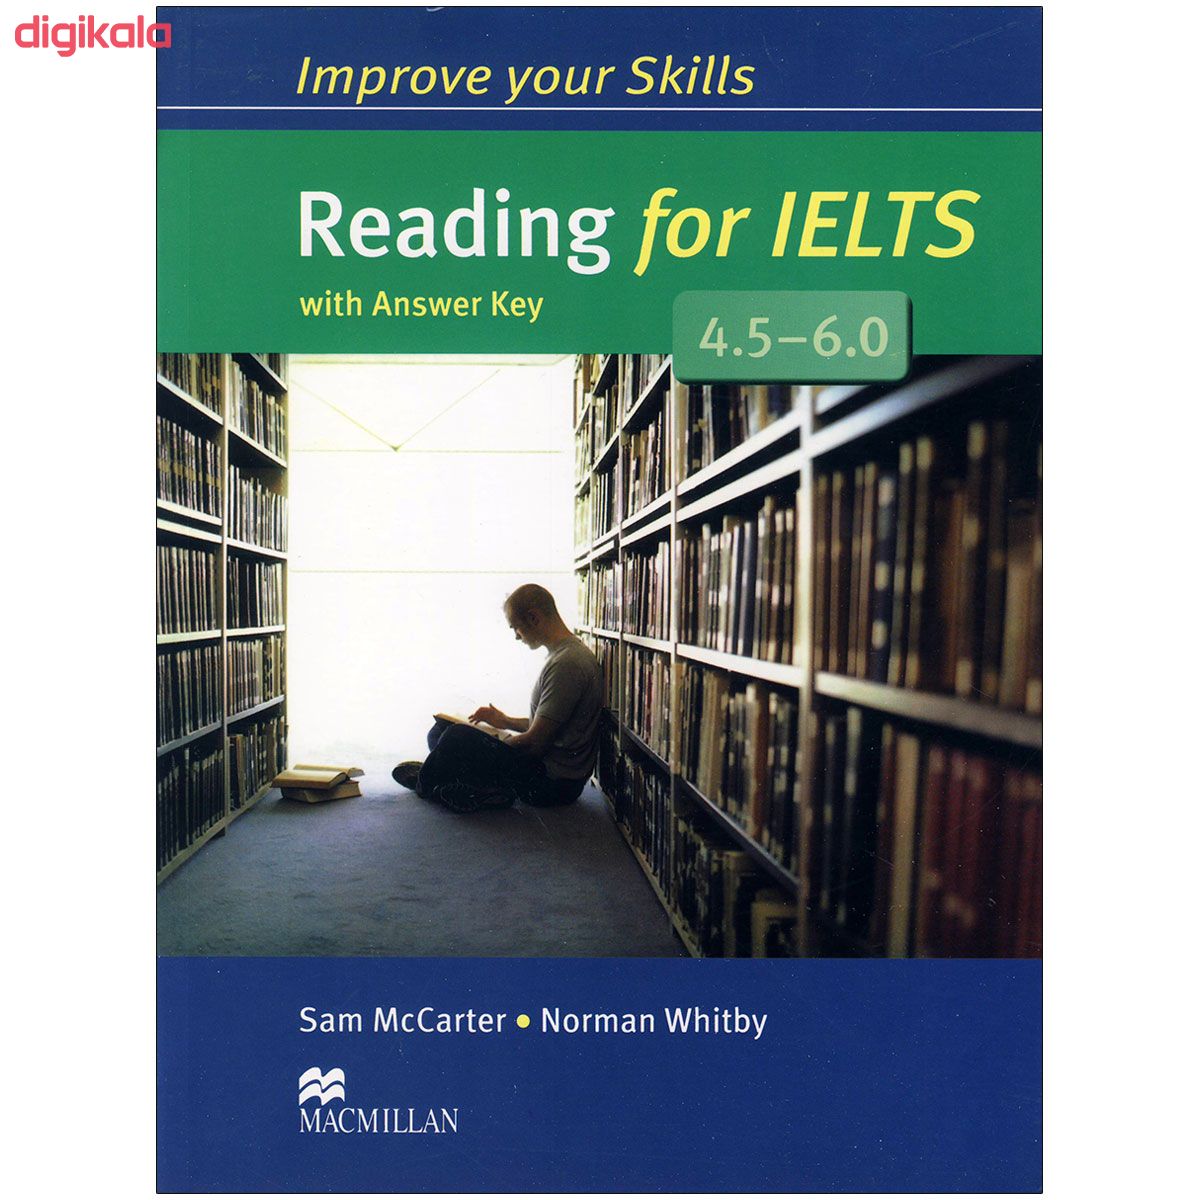  خرید اینترنتی با تخفیف ویژه کتاب Improve Your Skills Reading اثر جمعی از نویسندگان انتشارات مک میلان 2 جلدی